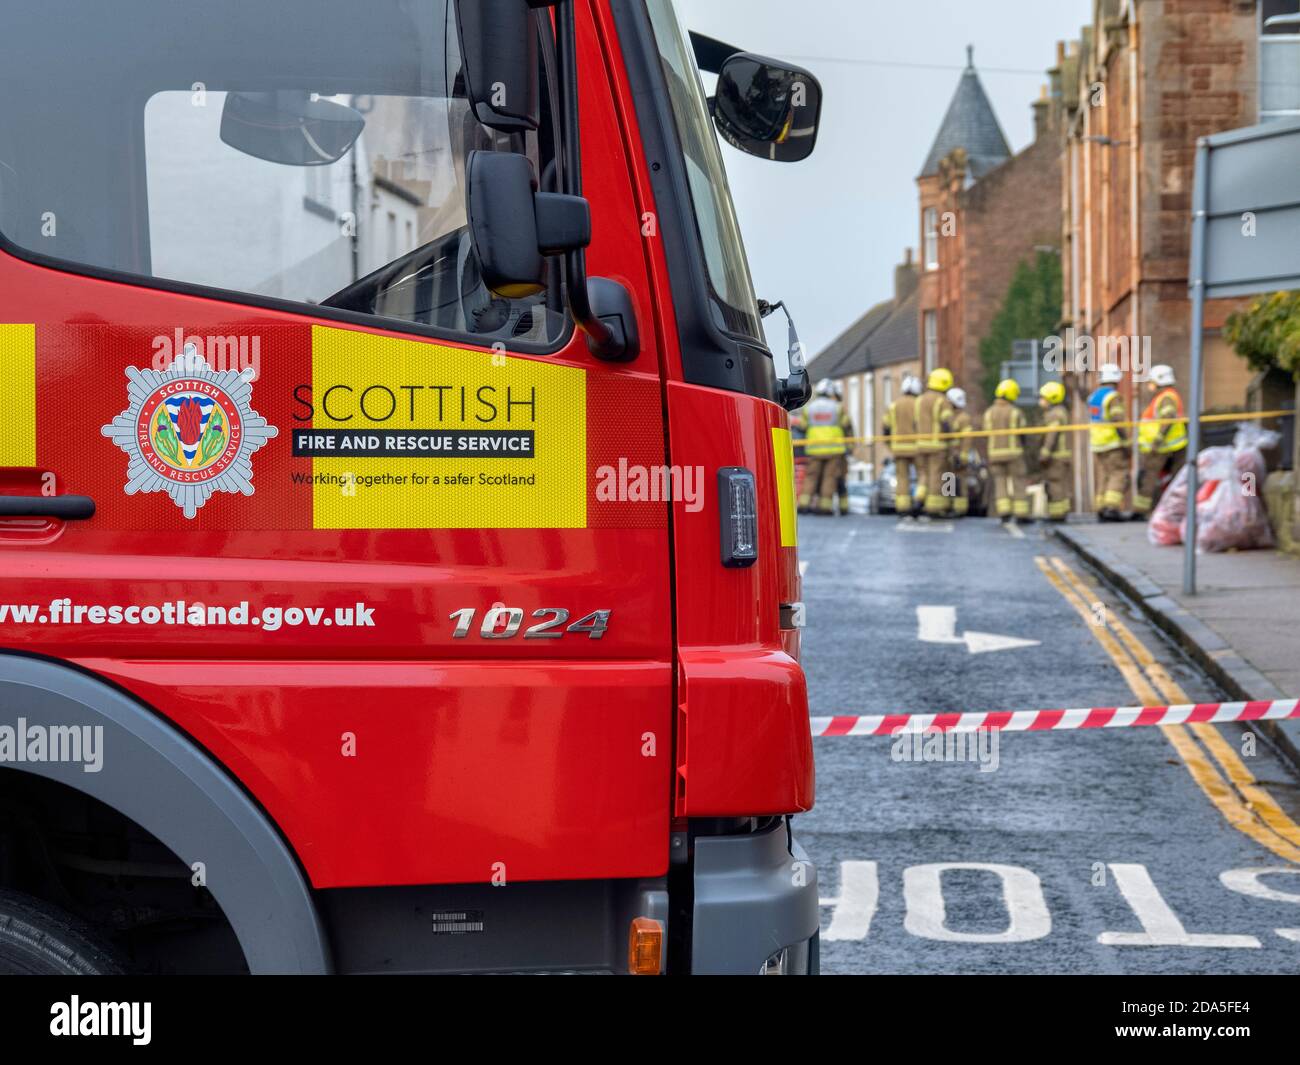 Les pompiers écossais du Service d'incendie et de sauvetage s'attaquent à un incendie à North Berwick, East Lothian, Écosse, Royaume-Uni. Banque D'Images